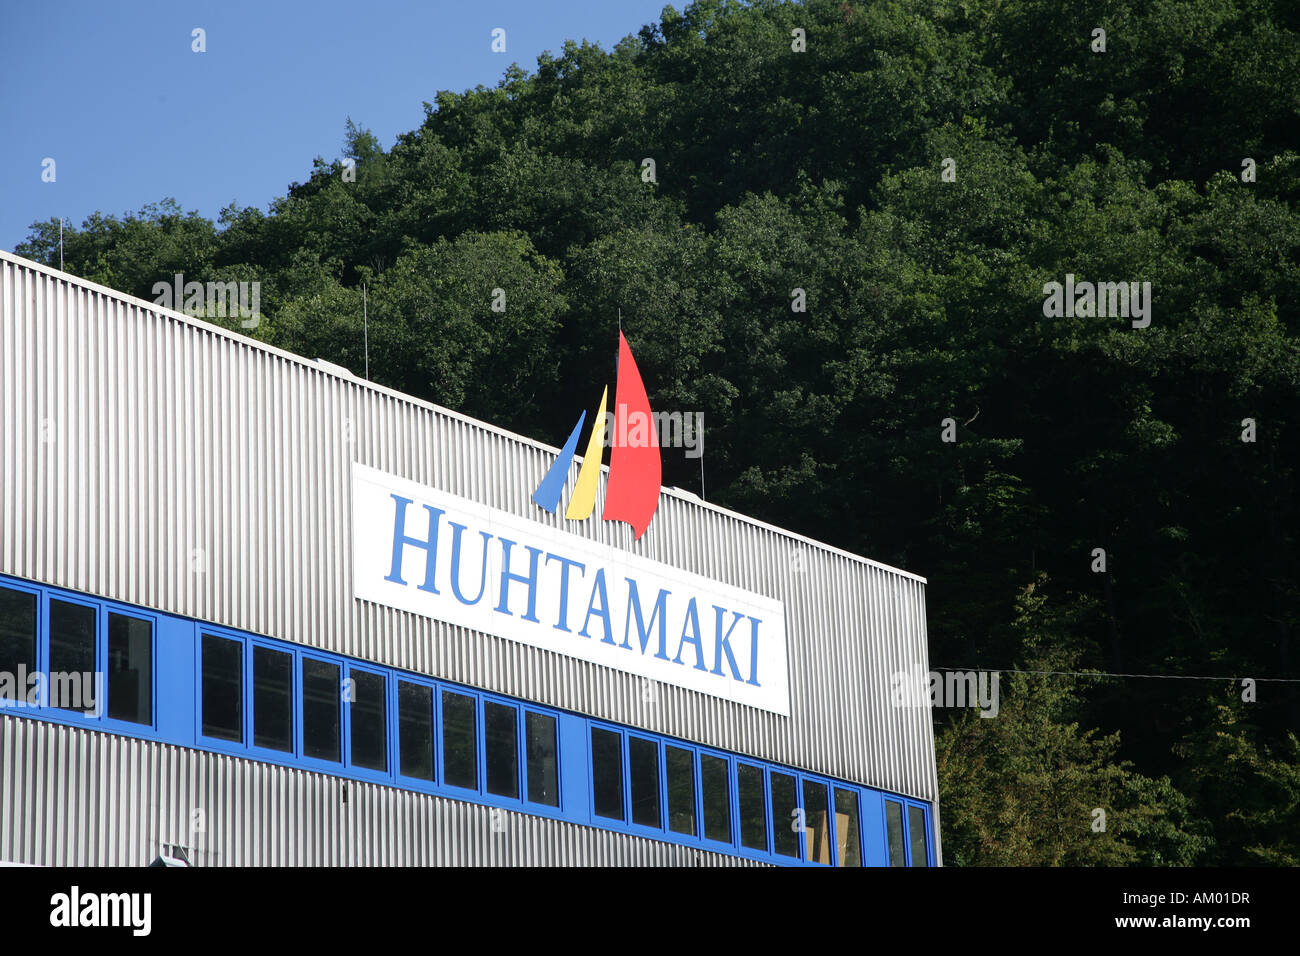 Wrapping producer Huhtamaki in Alf, Rhineland-Palatinate, Germany Stock Photo